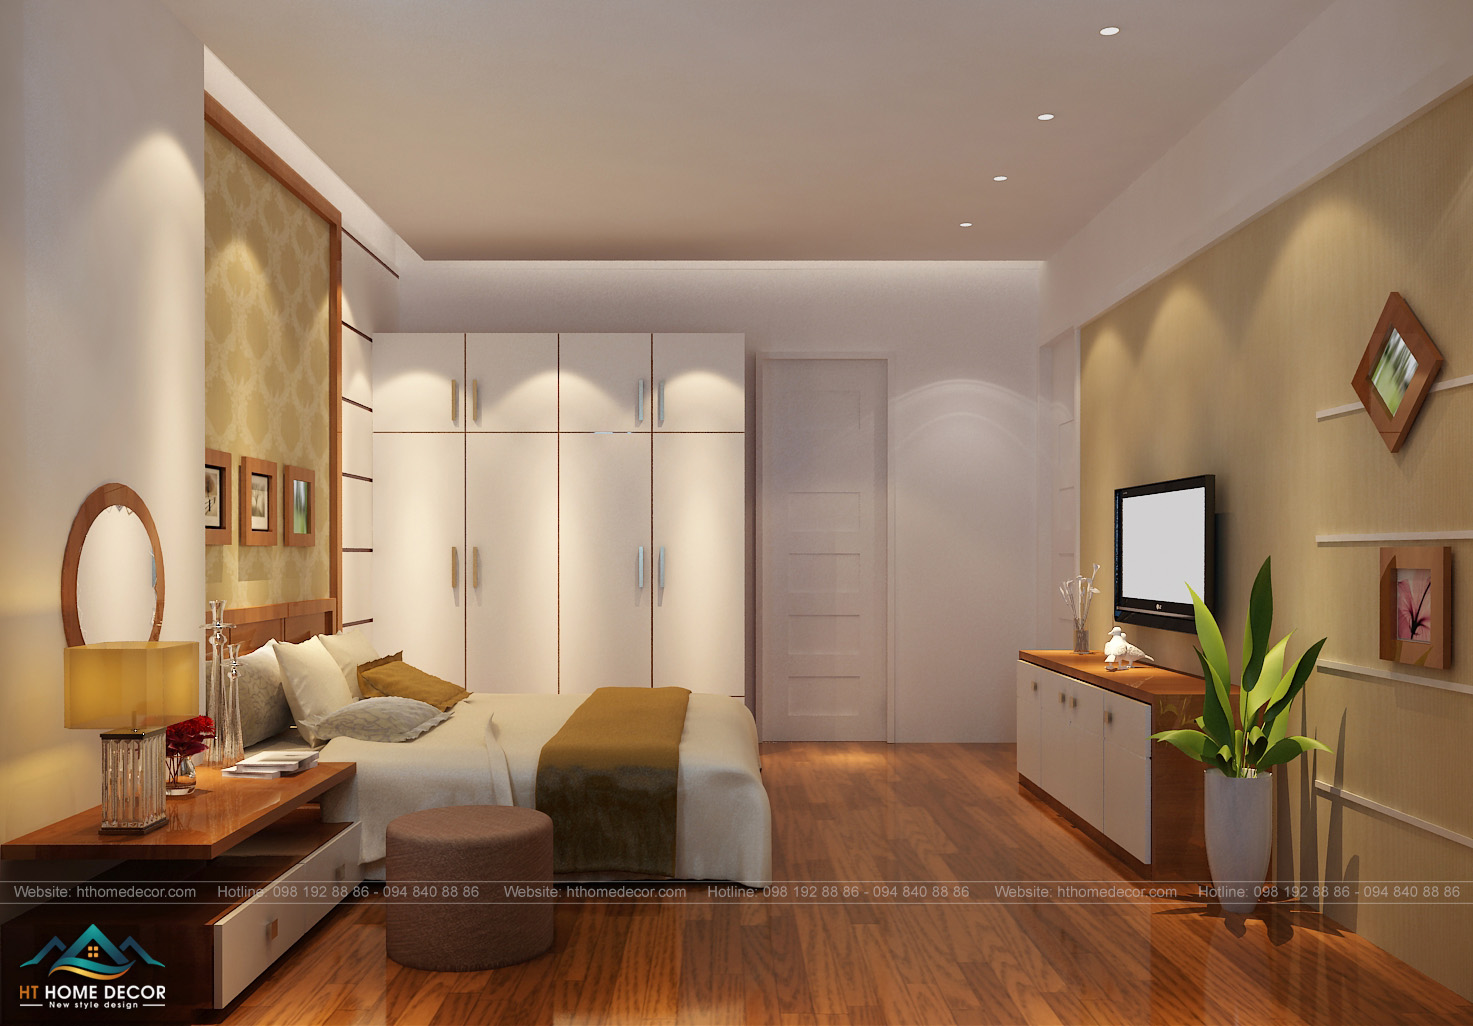 Không gian mang màu gỗ thanh lịch của nội thất. Phòng ngủ có diện tích vừa đủ, đem lại cảm giác thoải mái. Với những tiện nghi giúp ích cho nhu cầu cho người sử dụng.